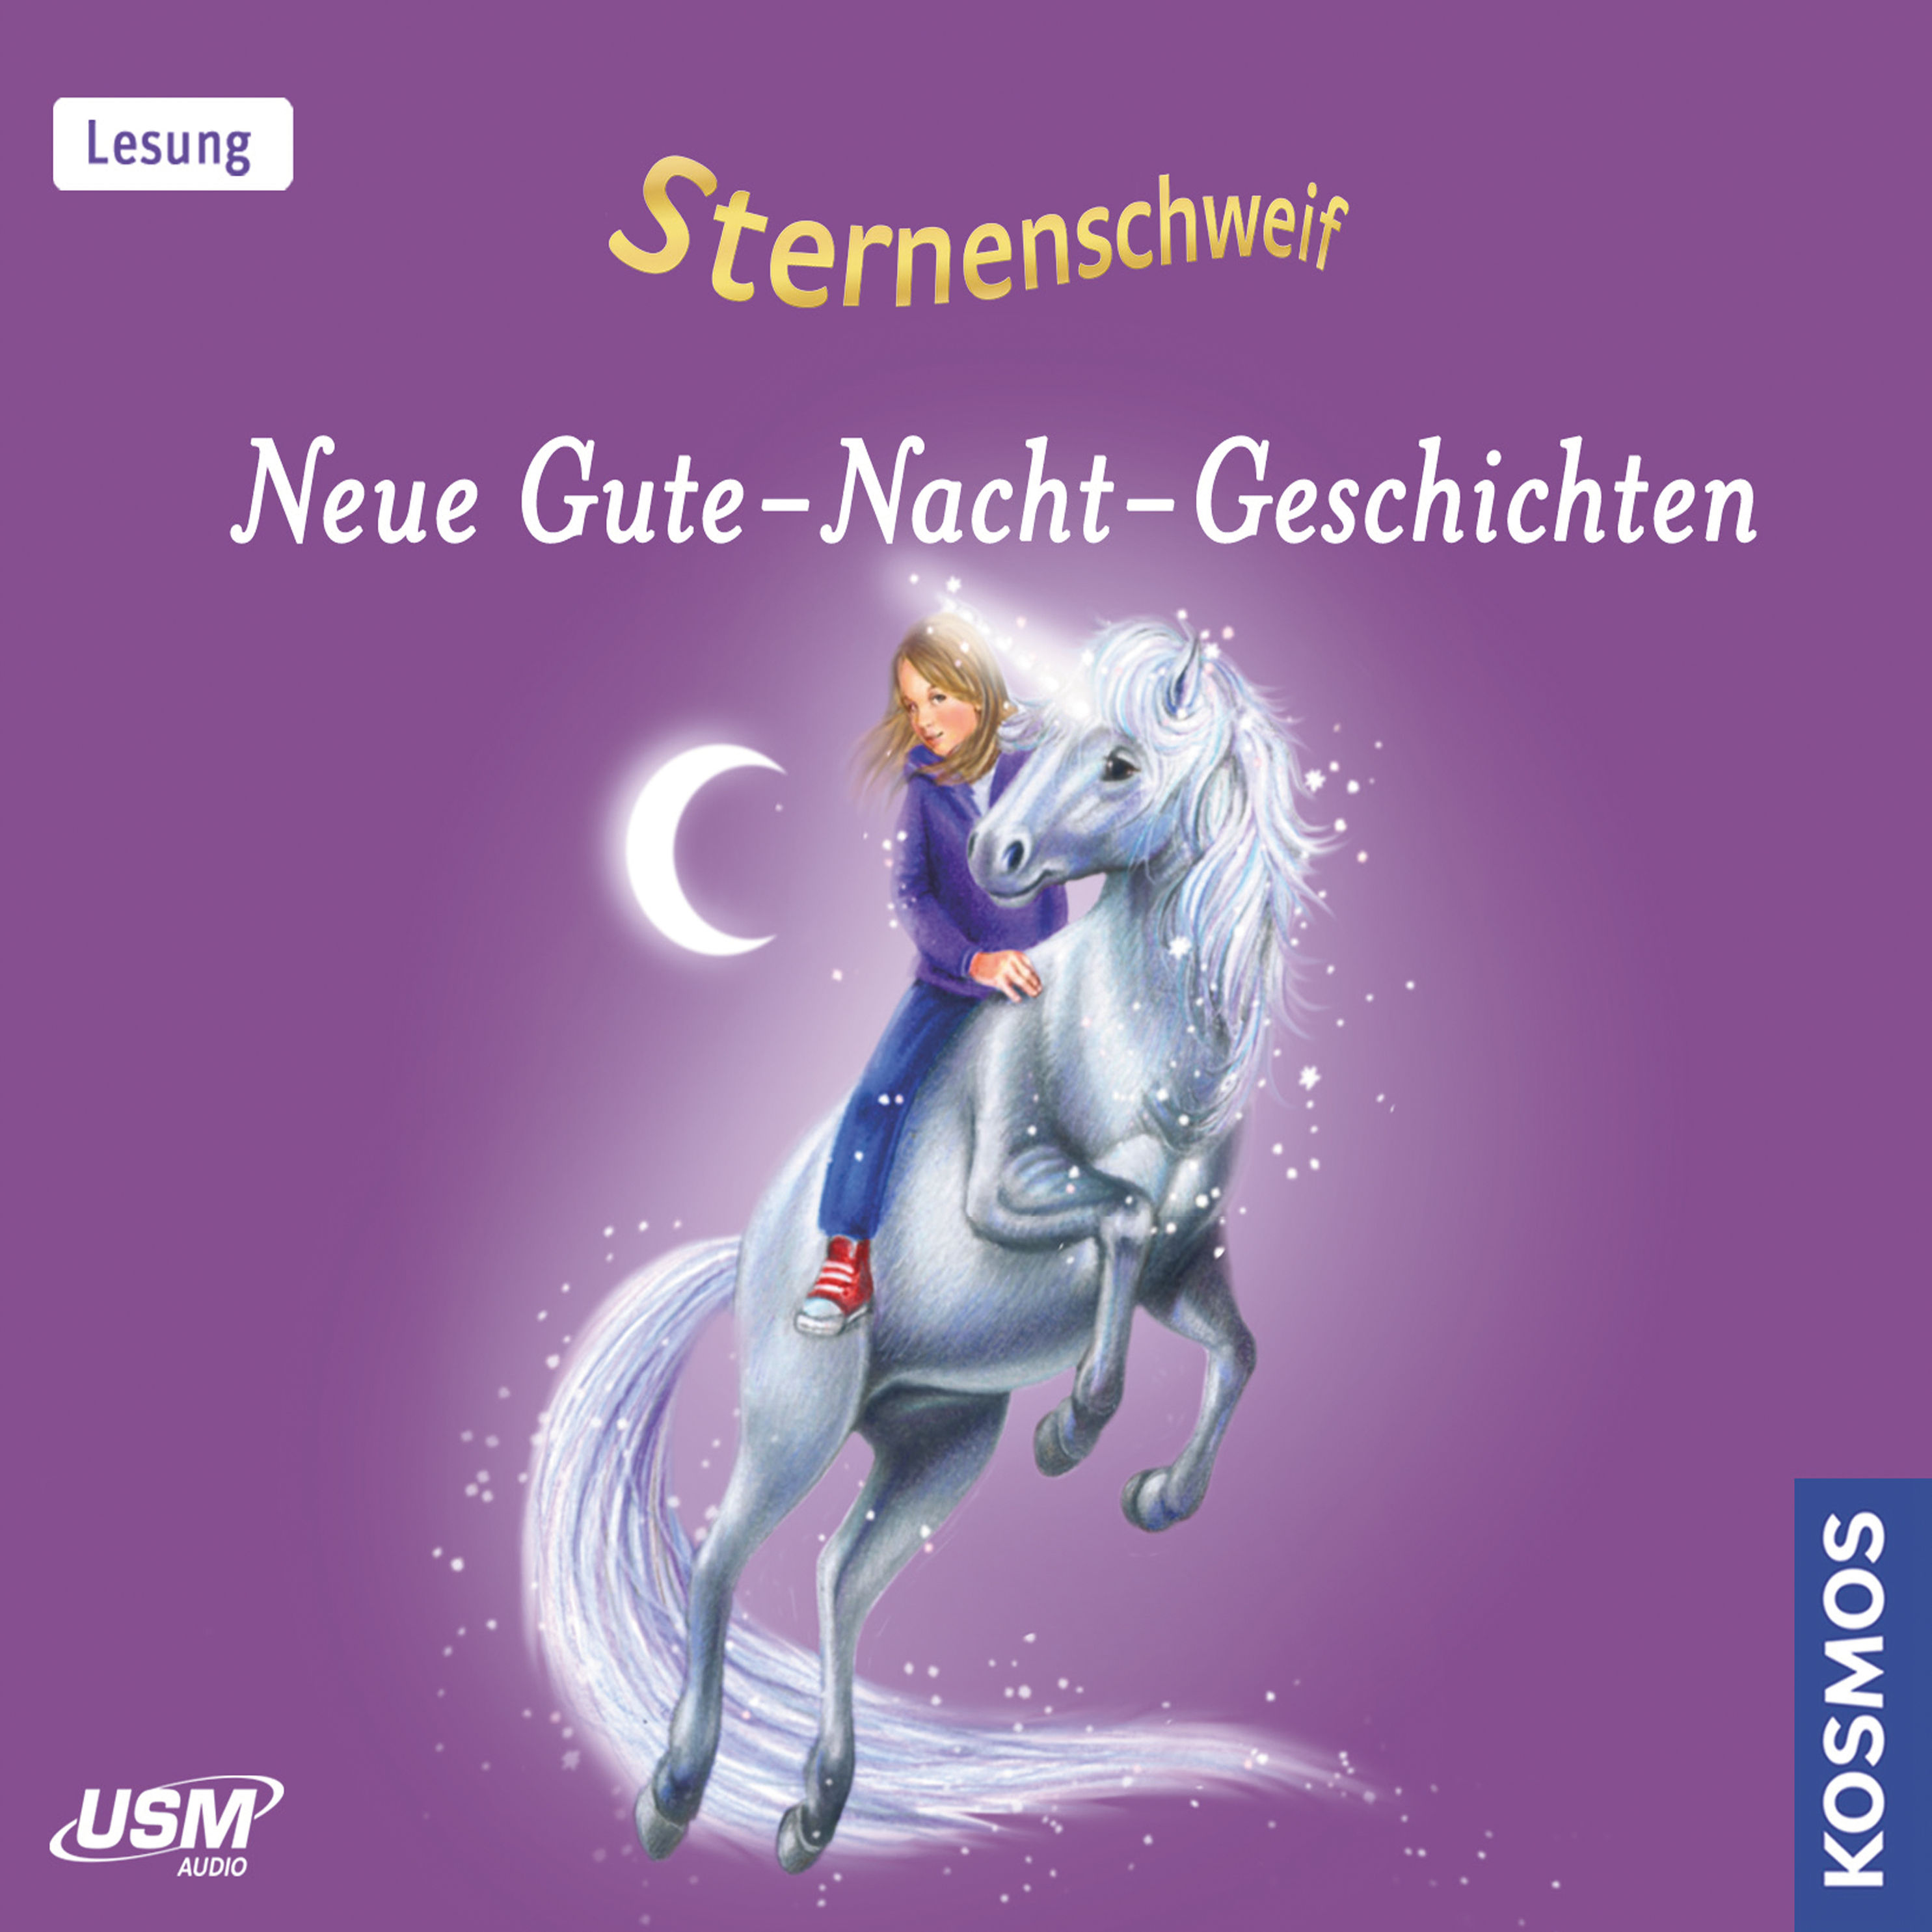 Sternenschweif - Sternenschweif Neue Gute-Nacht-Geschichten Hörbuch Download